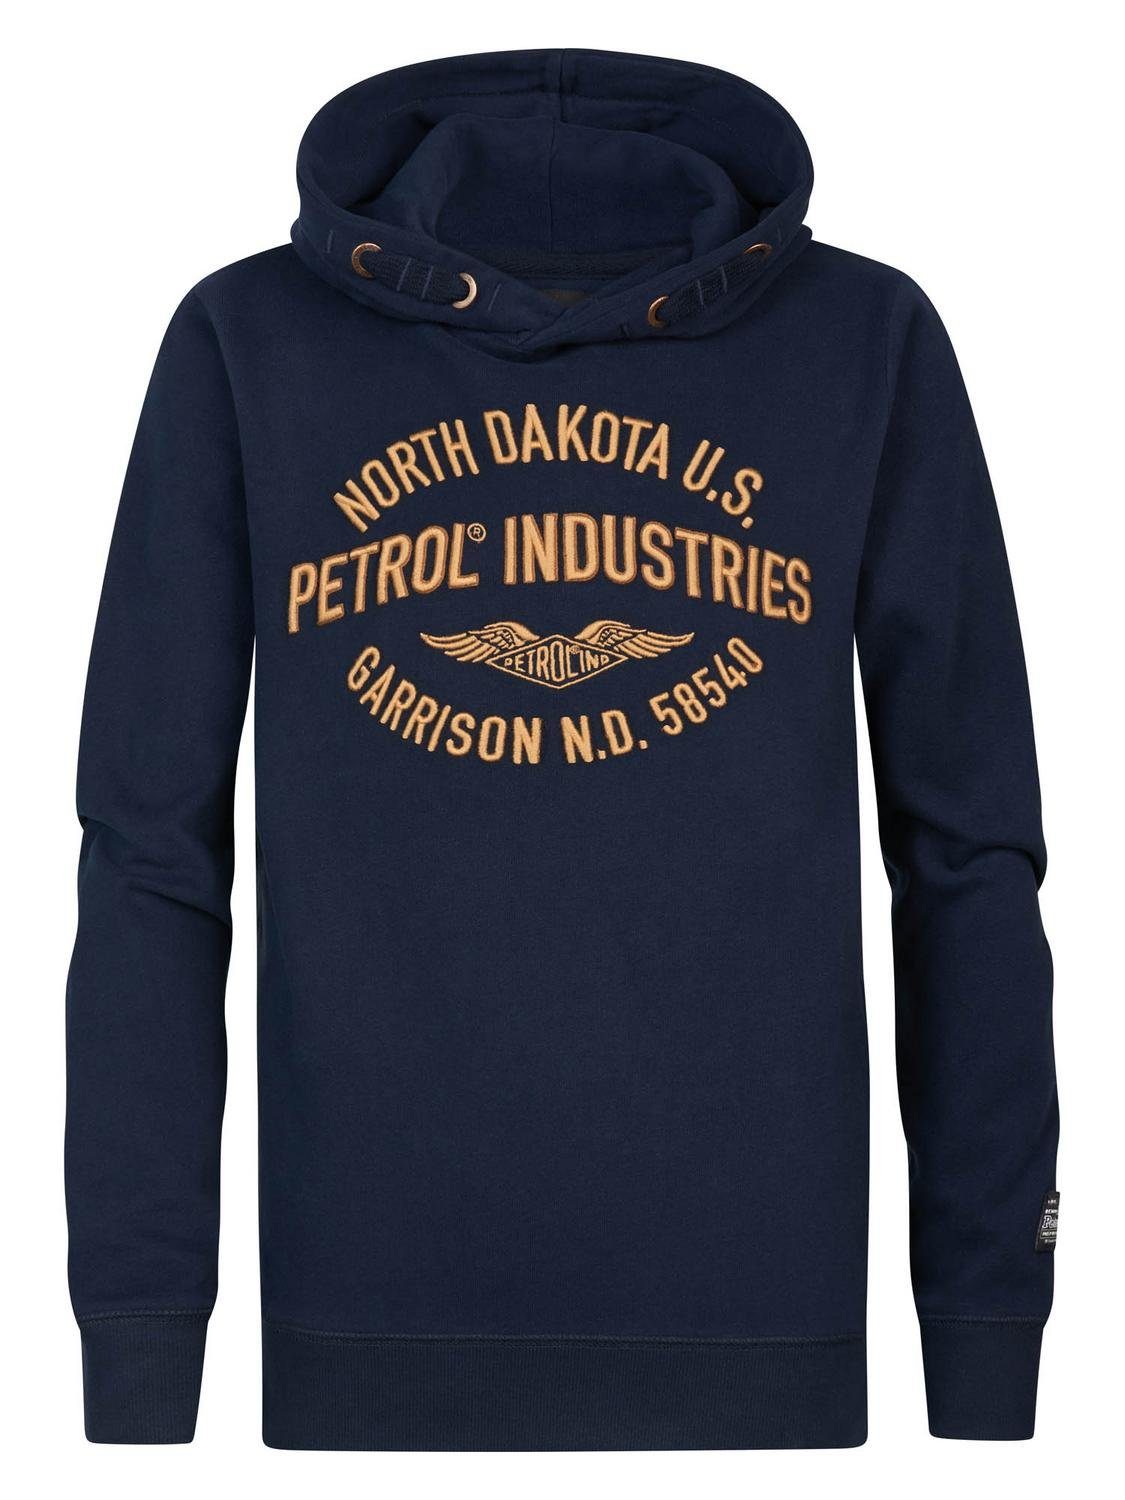 Industries Boys Hooded Sweater Sweatshirt Petrol